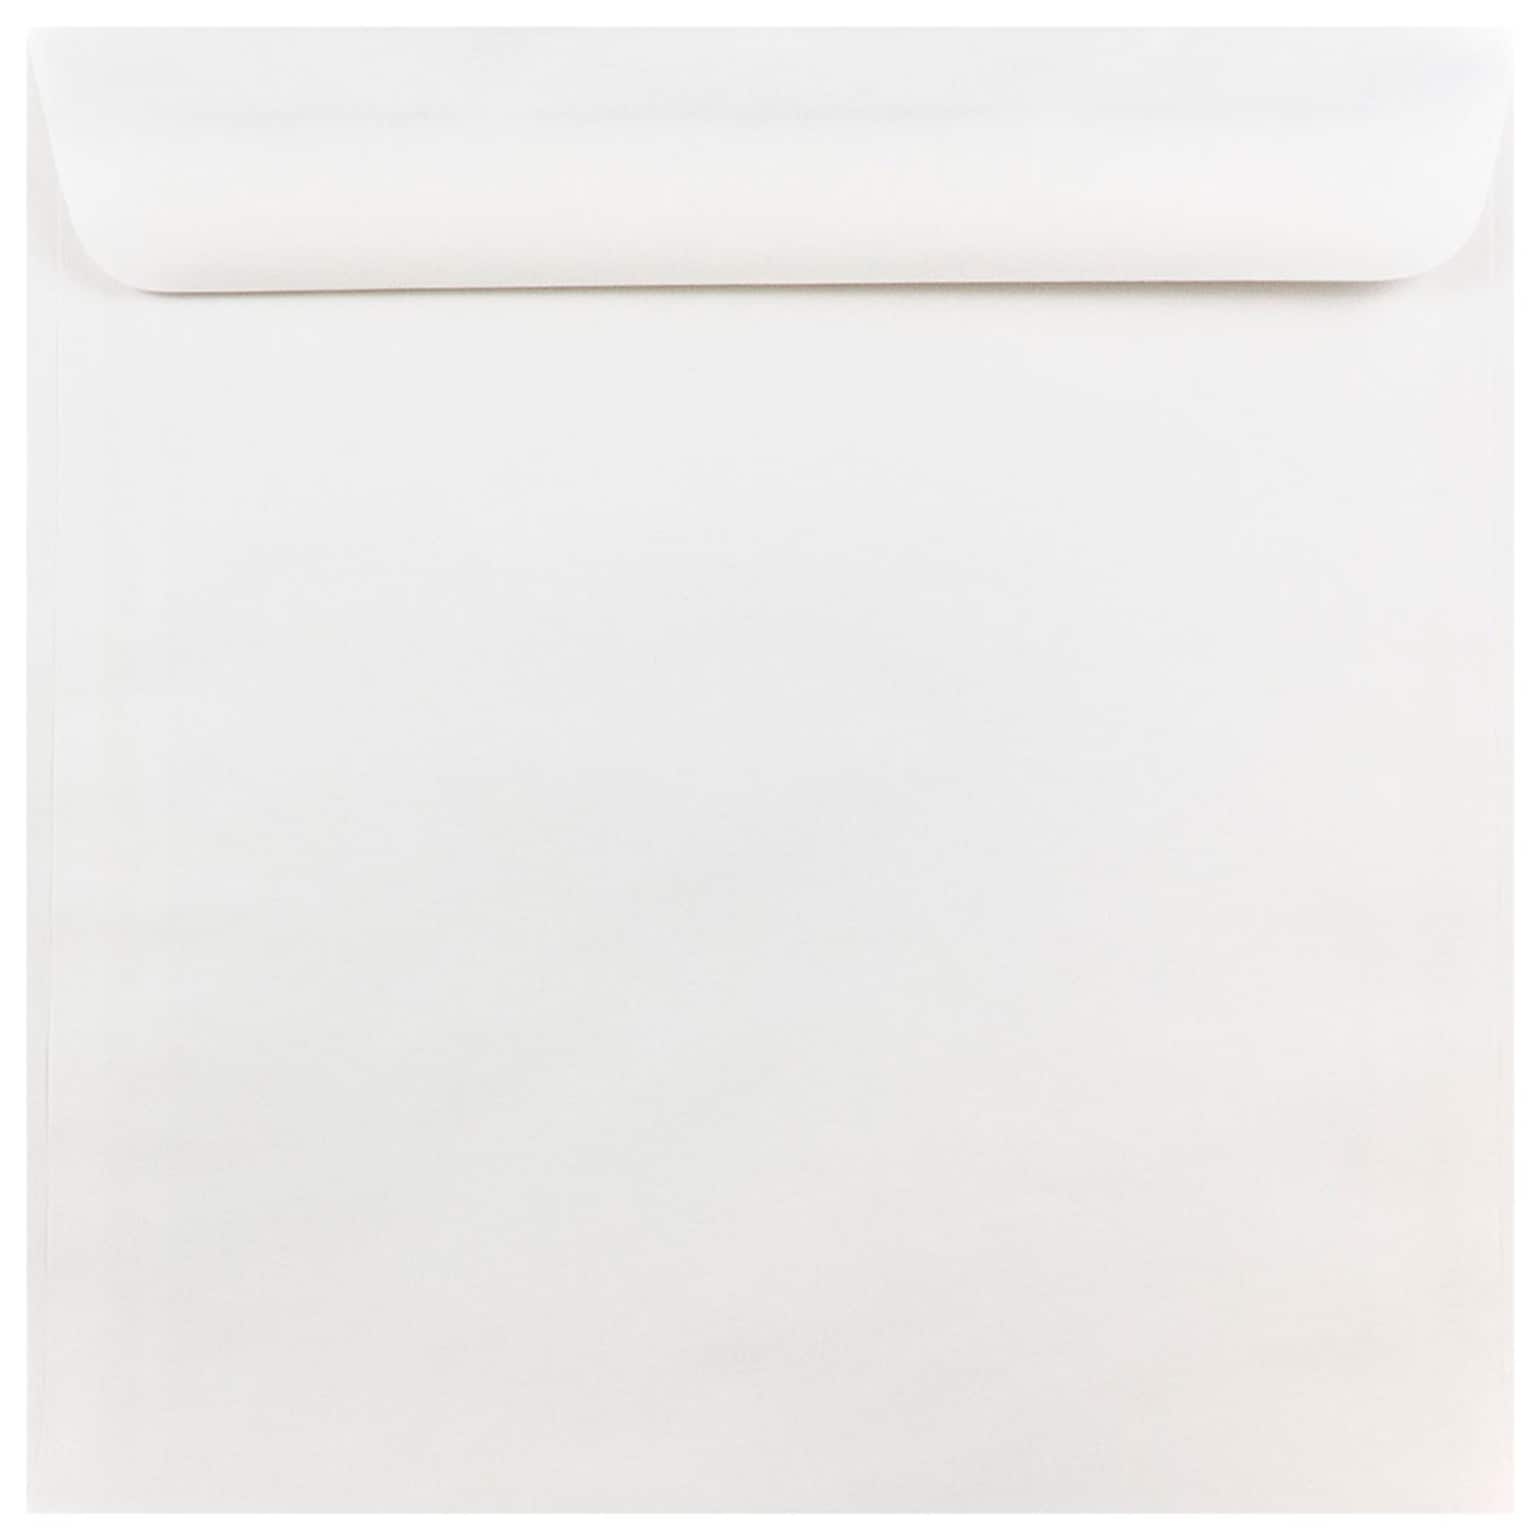 JAM Paper 10 x 10 Large Square Invitation Envelopes, White, Bulk 250/Box (3992319H)